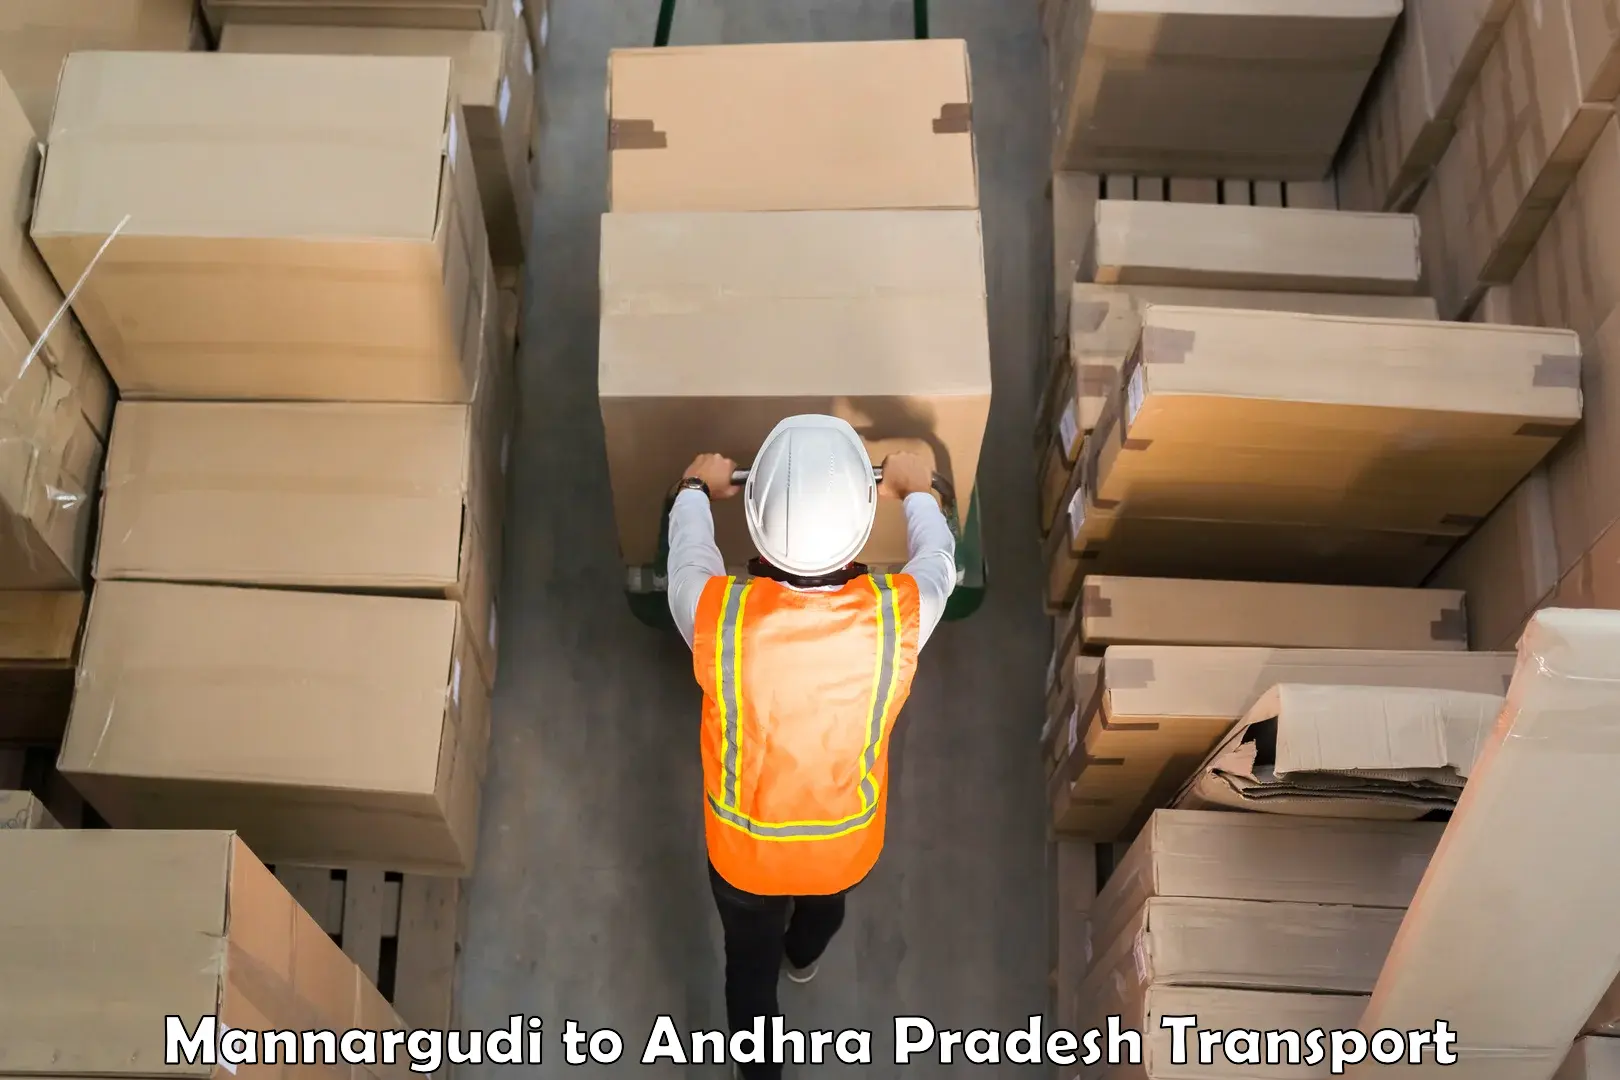 Goods delivery service Mannargudi to Proddatur